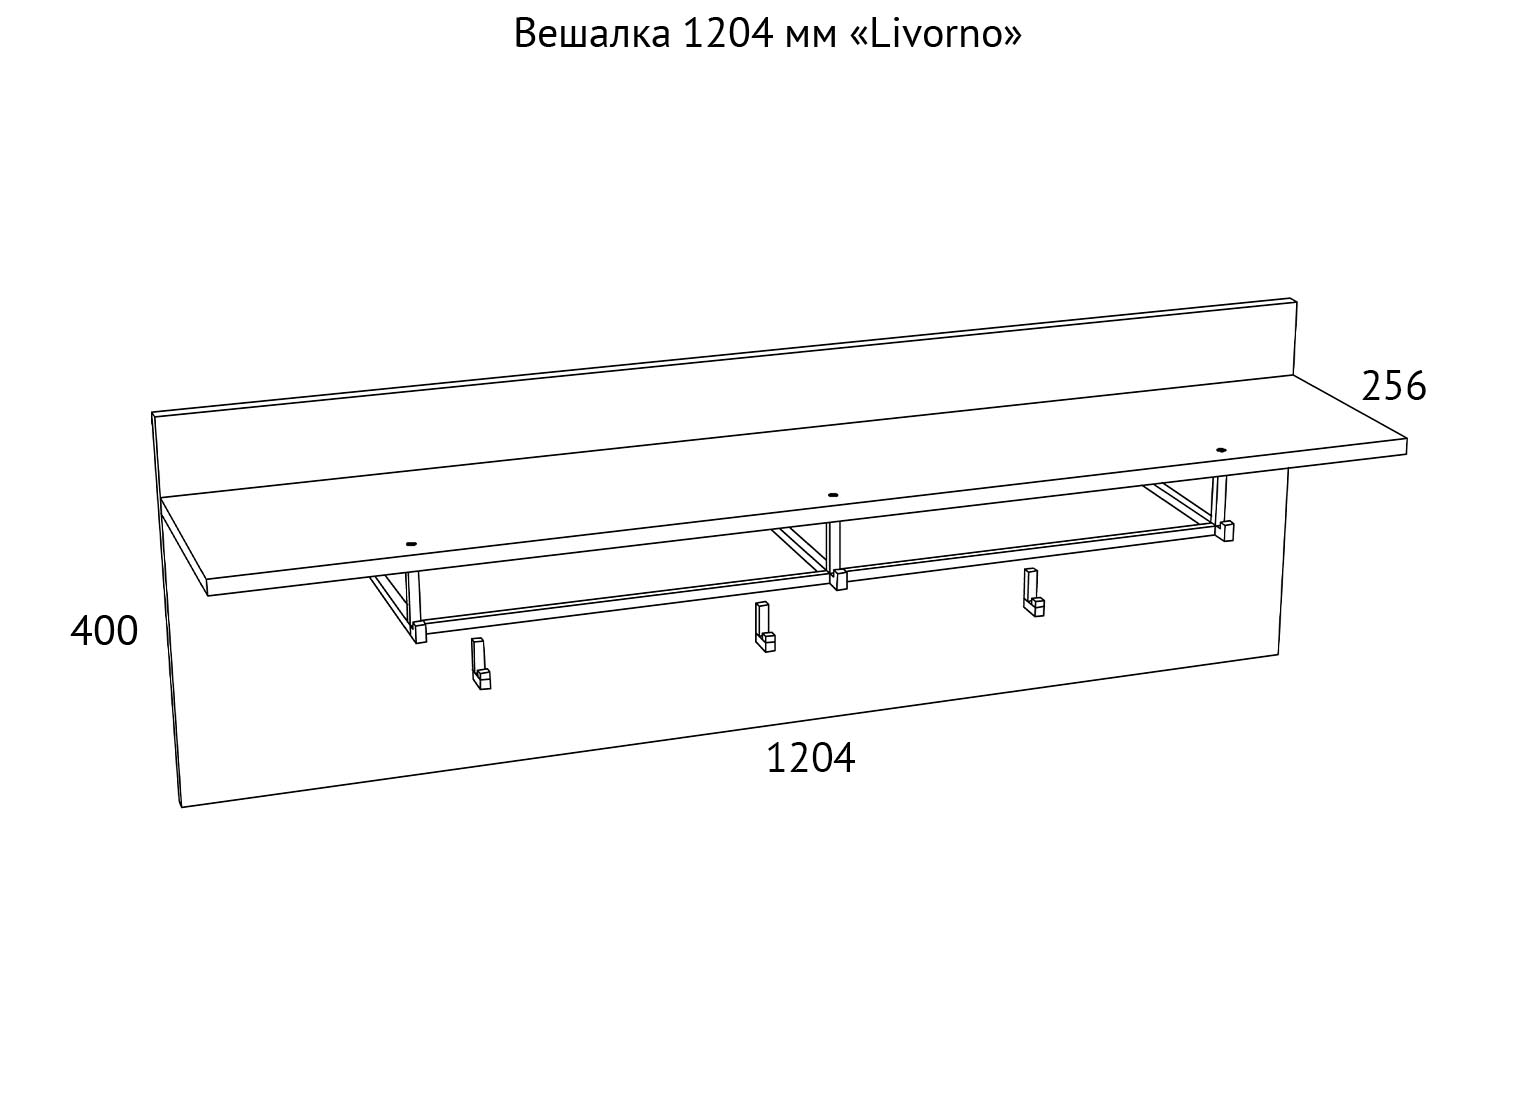 НМ 013.20-01 Вешалка с полкой 1204 мм Livorno схема Мебель Краснодар